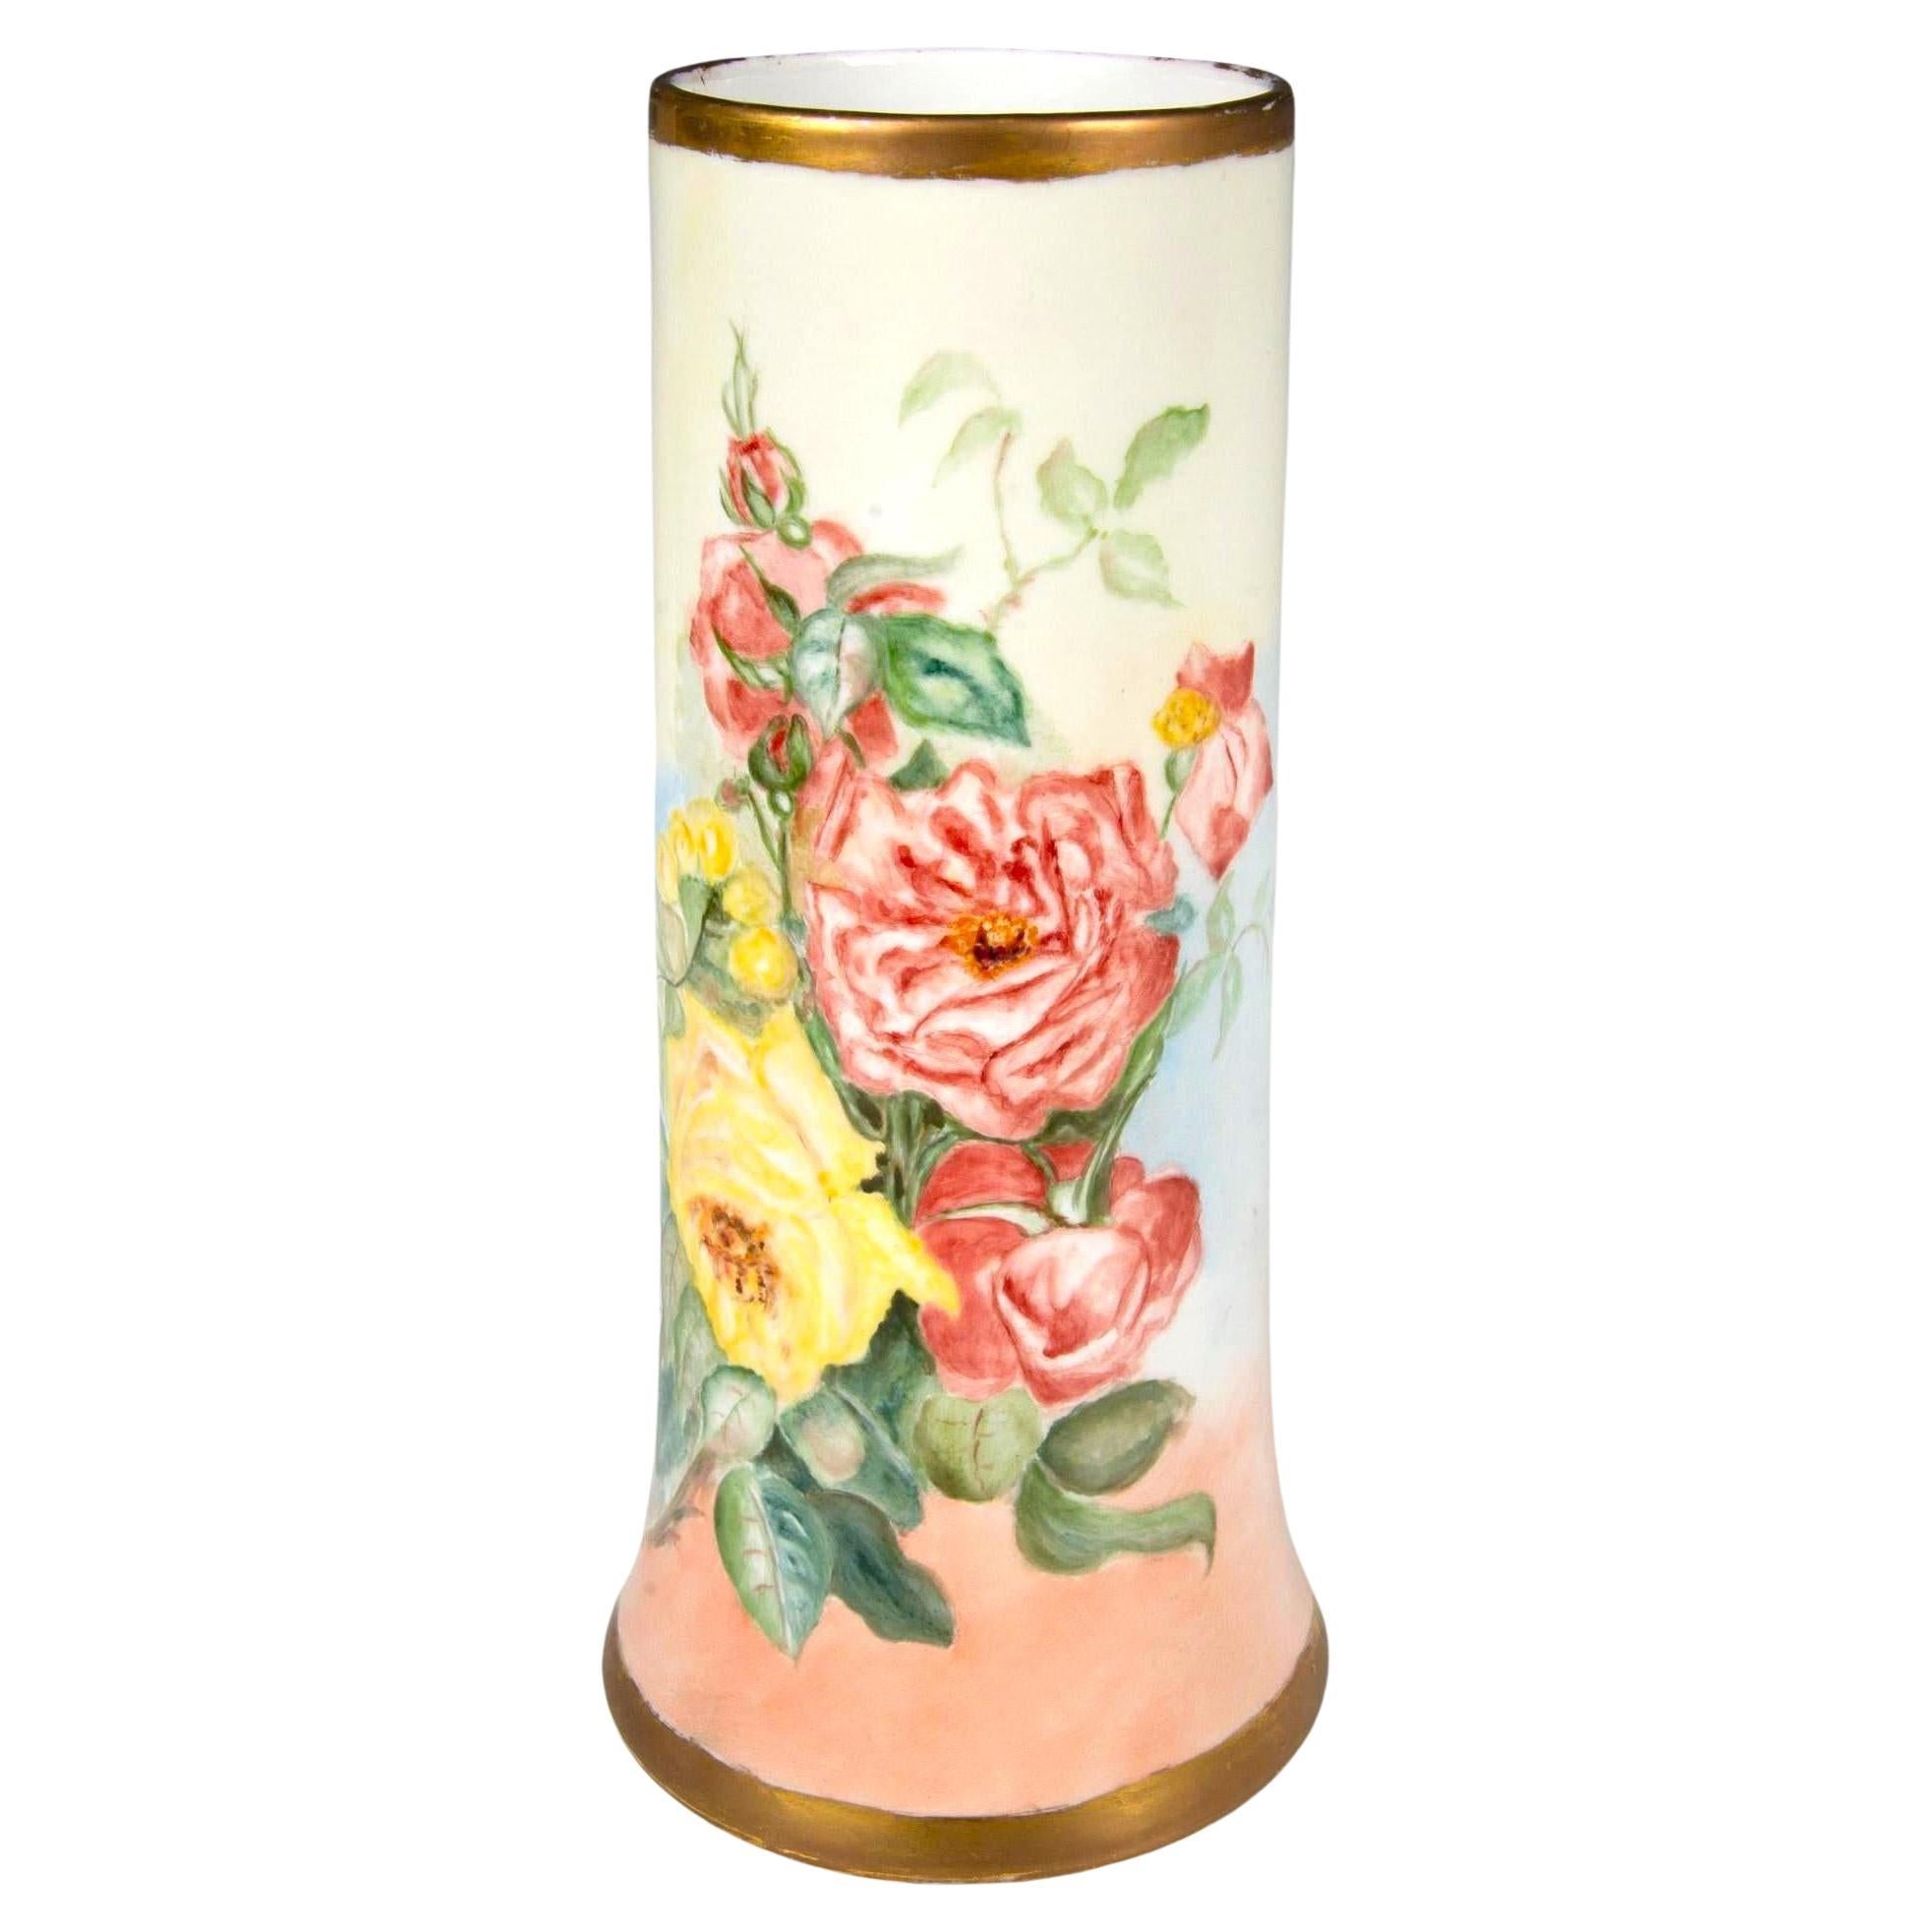 Französische handbemalte / vergoldete dekorative florale Details-Deko-Vase mit Blumendetails